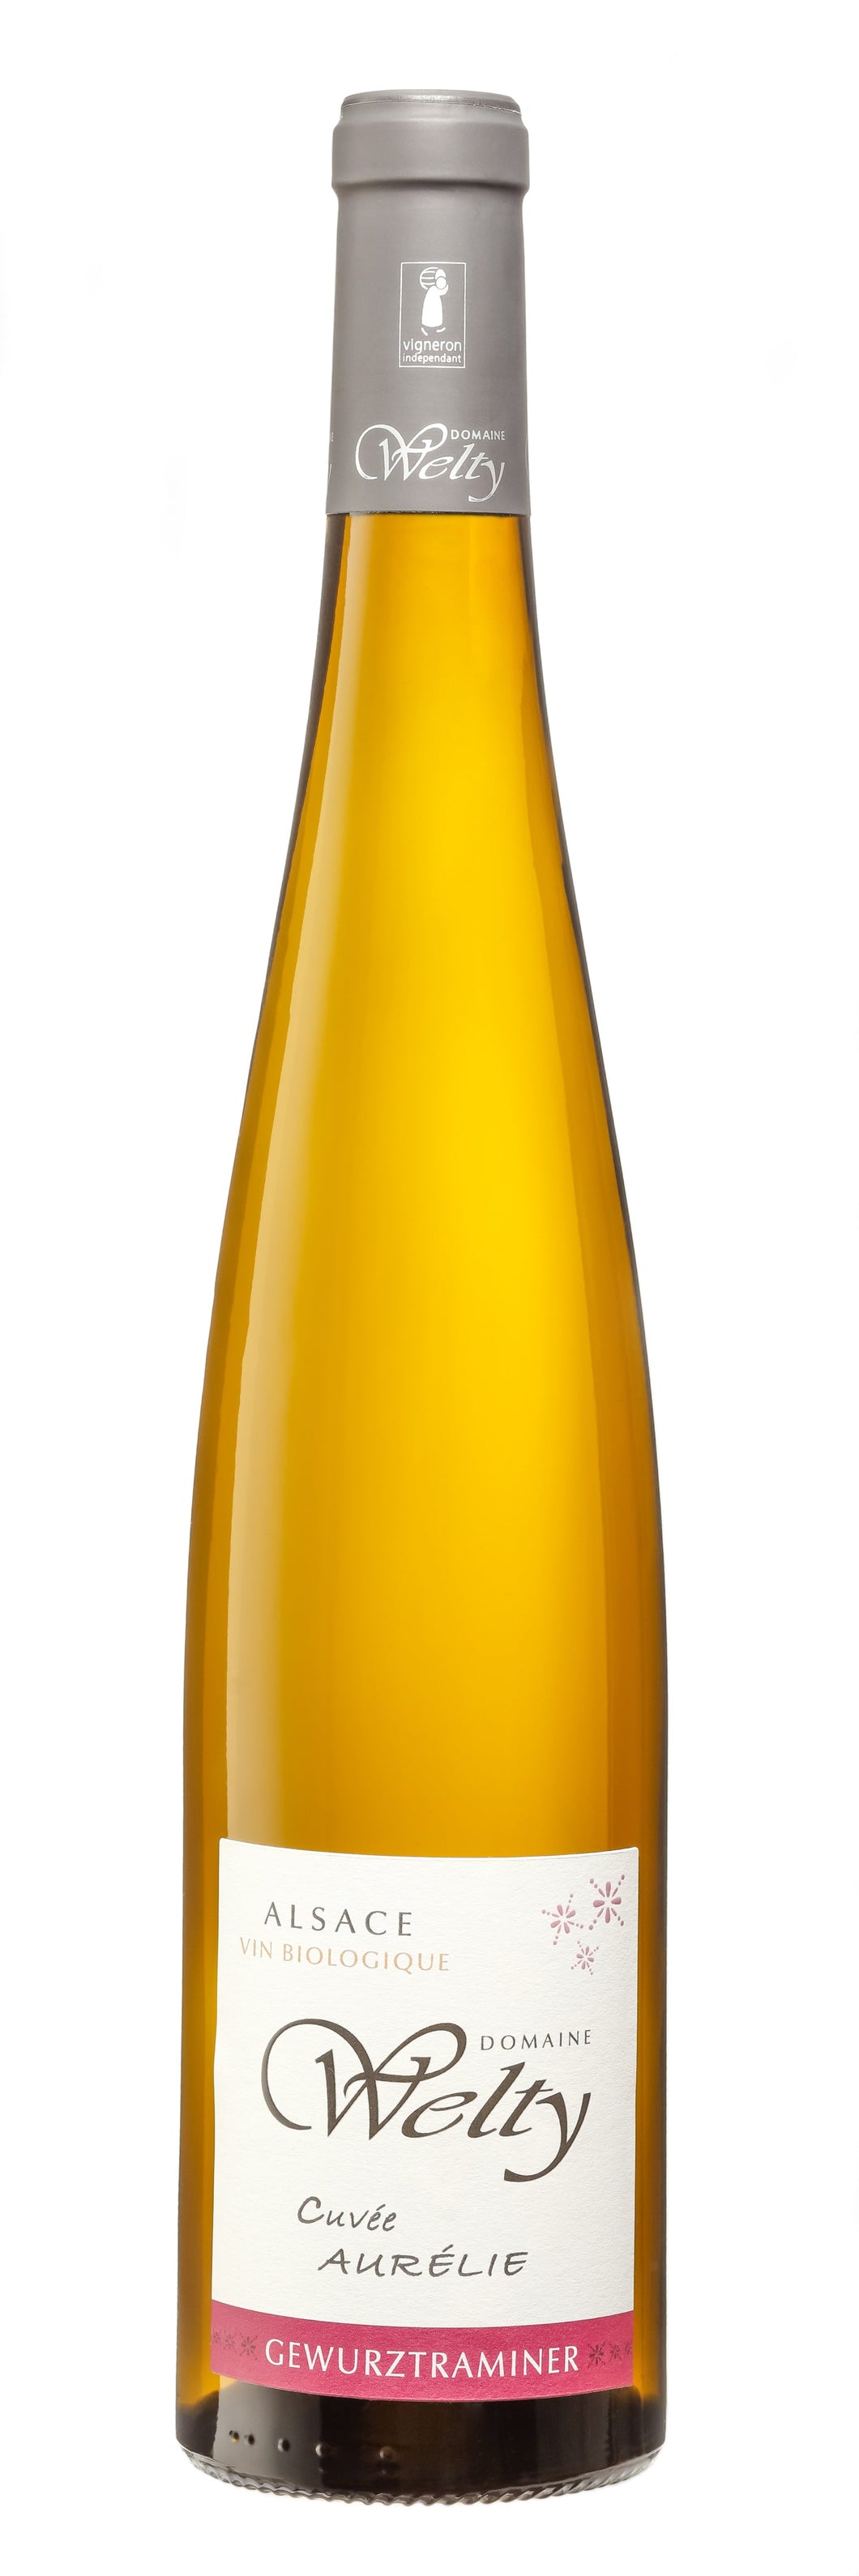 Gewurztraminer Cuvée Aurélie 2020 Vin Biologique